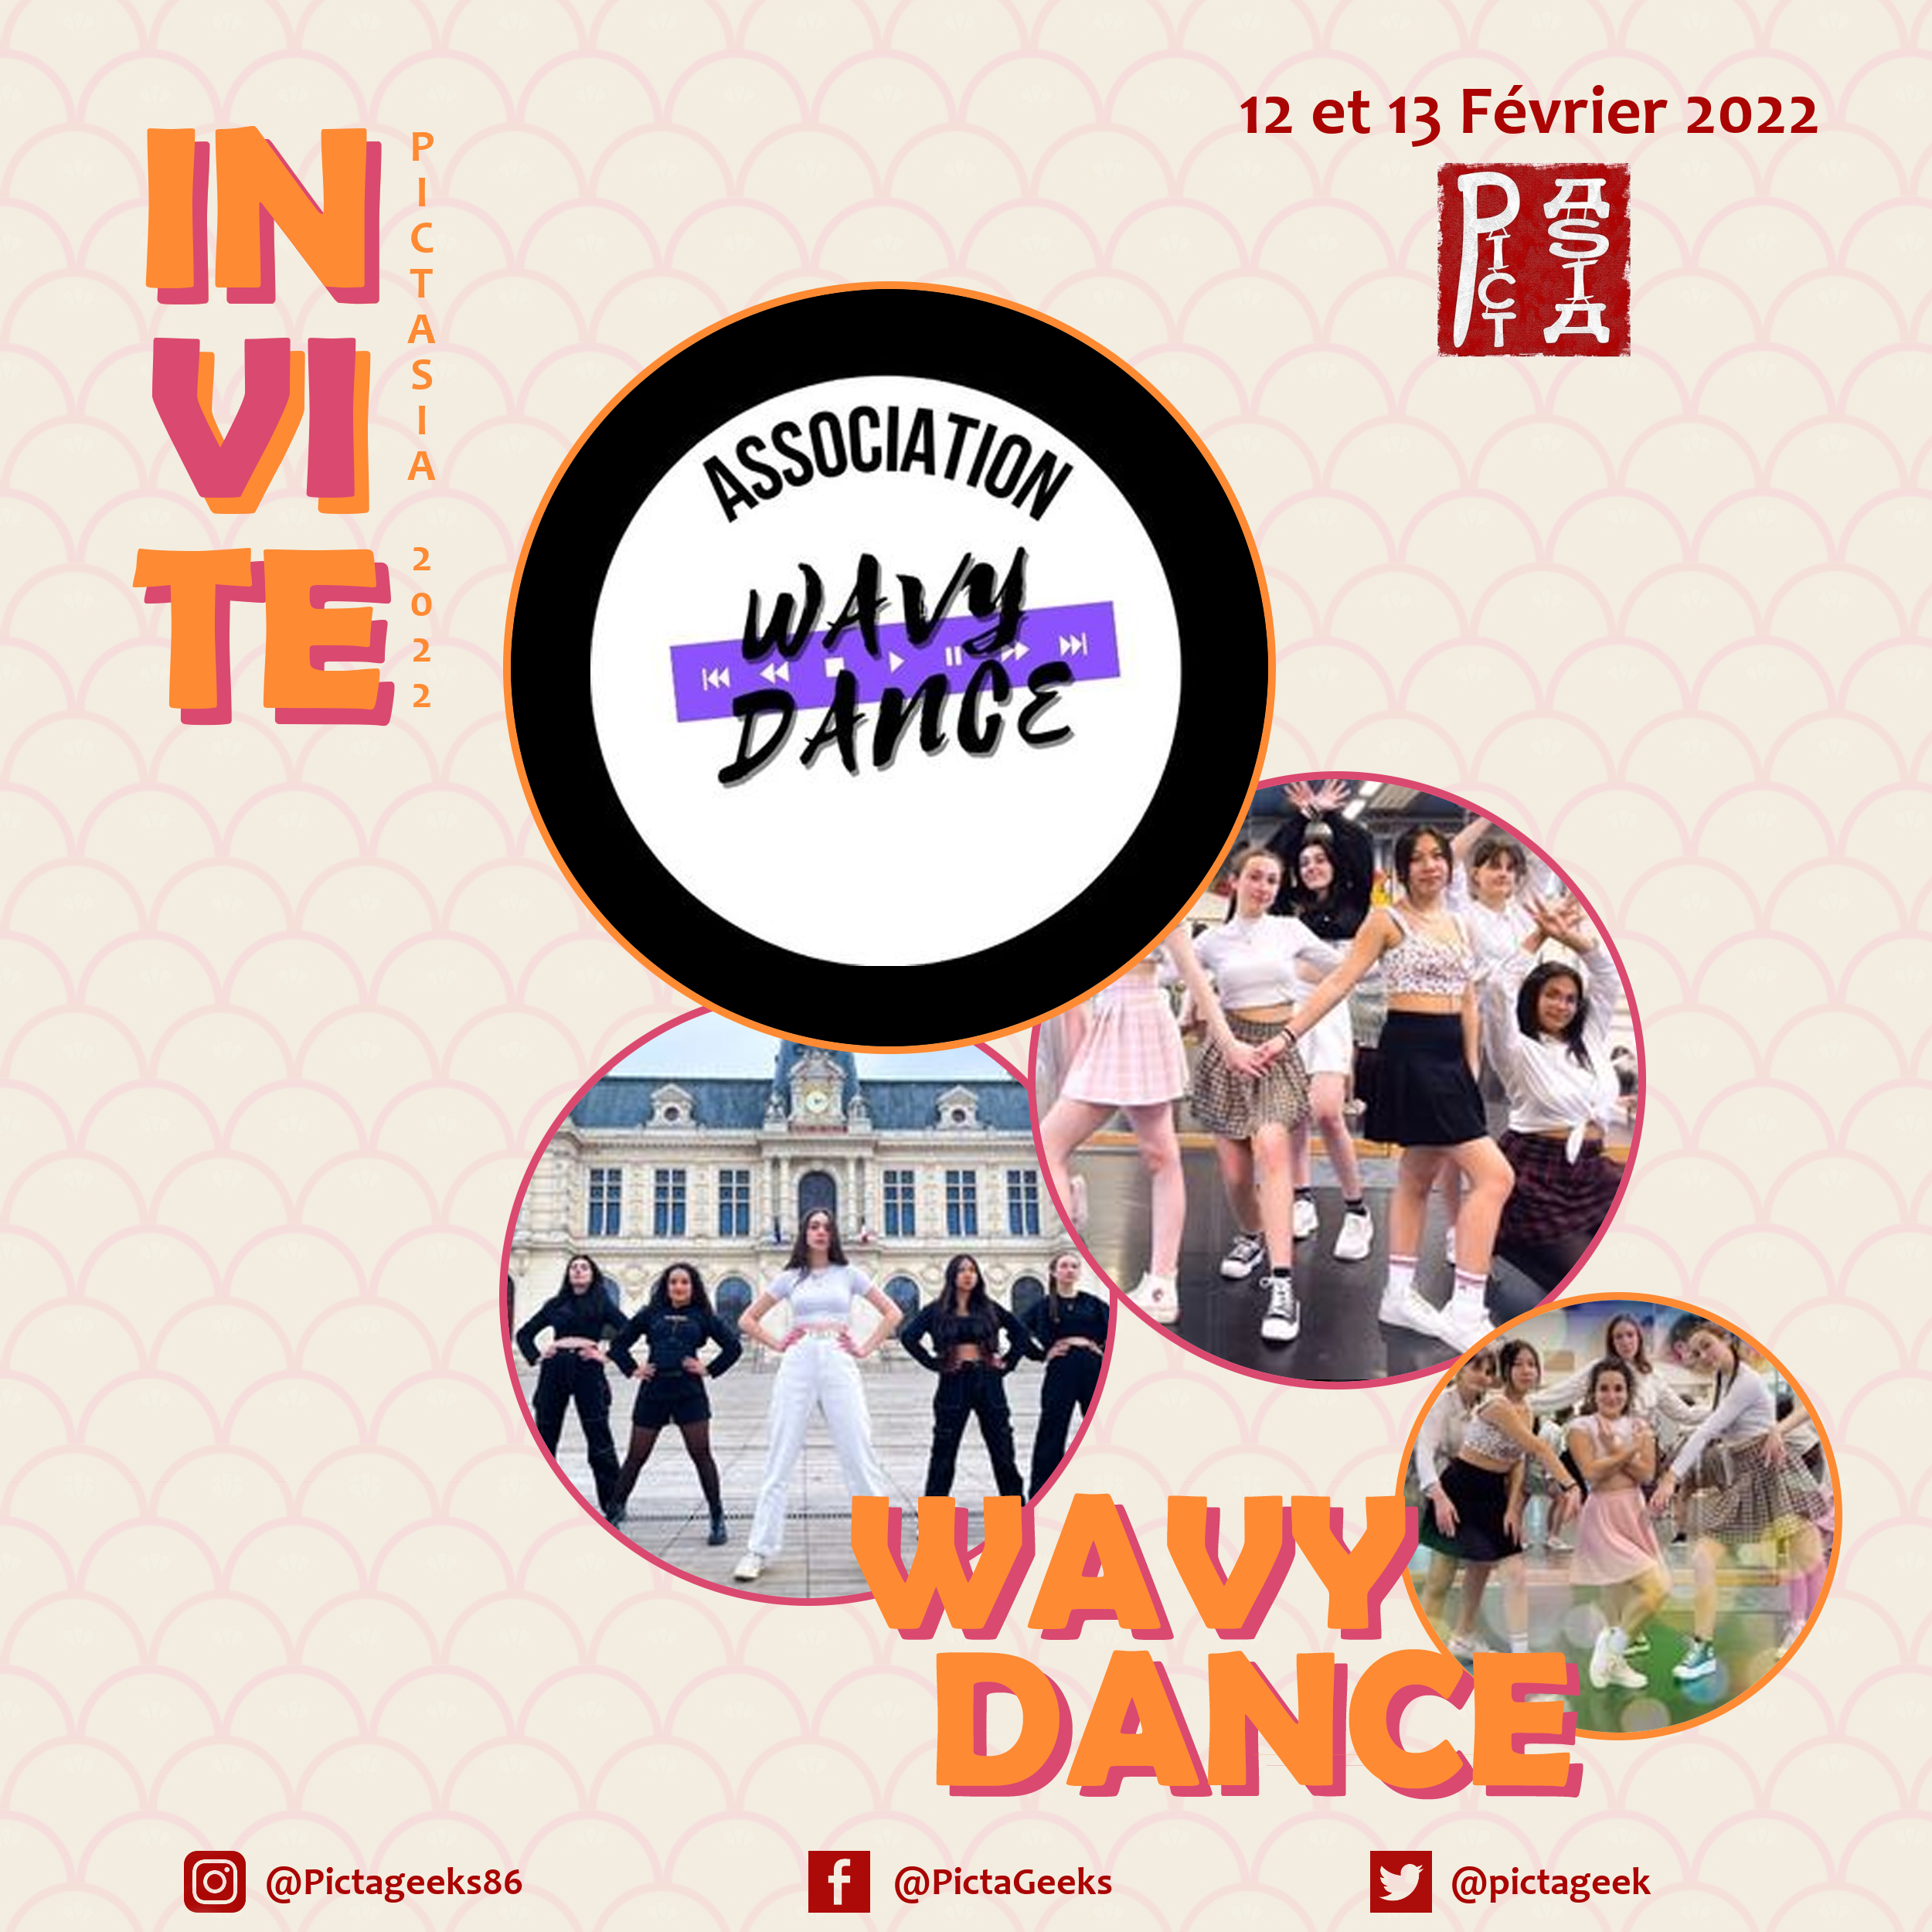 Wavy Dance, kpop, danse, Corée, Asie, invité, association, Poitiers, Pict'Asia, pictasia, pictageek